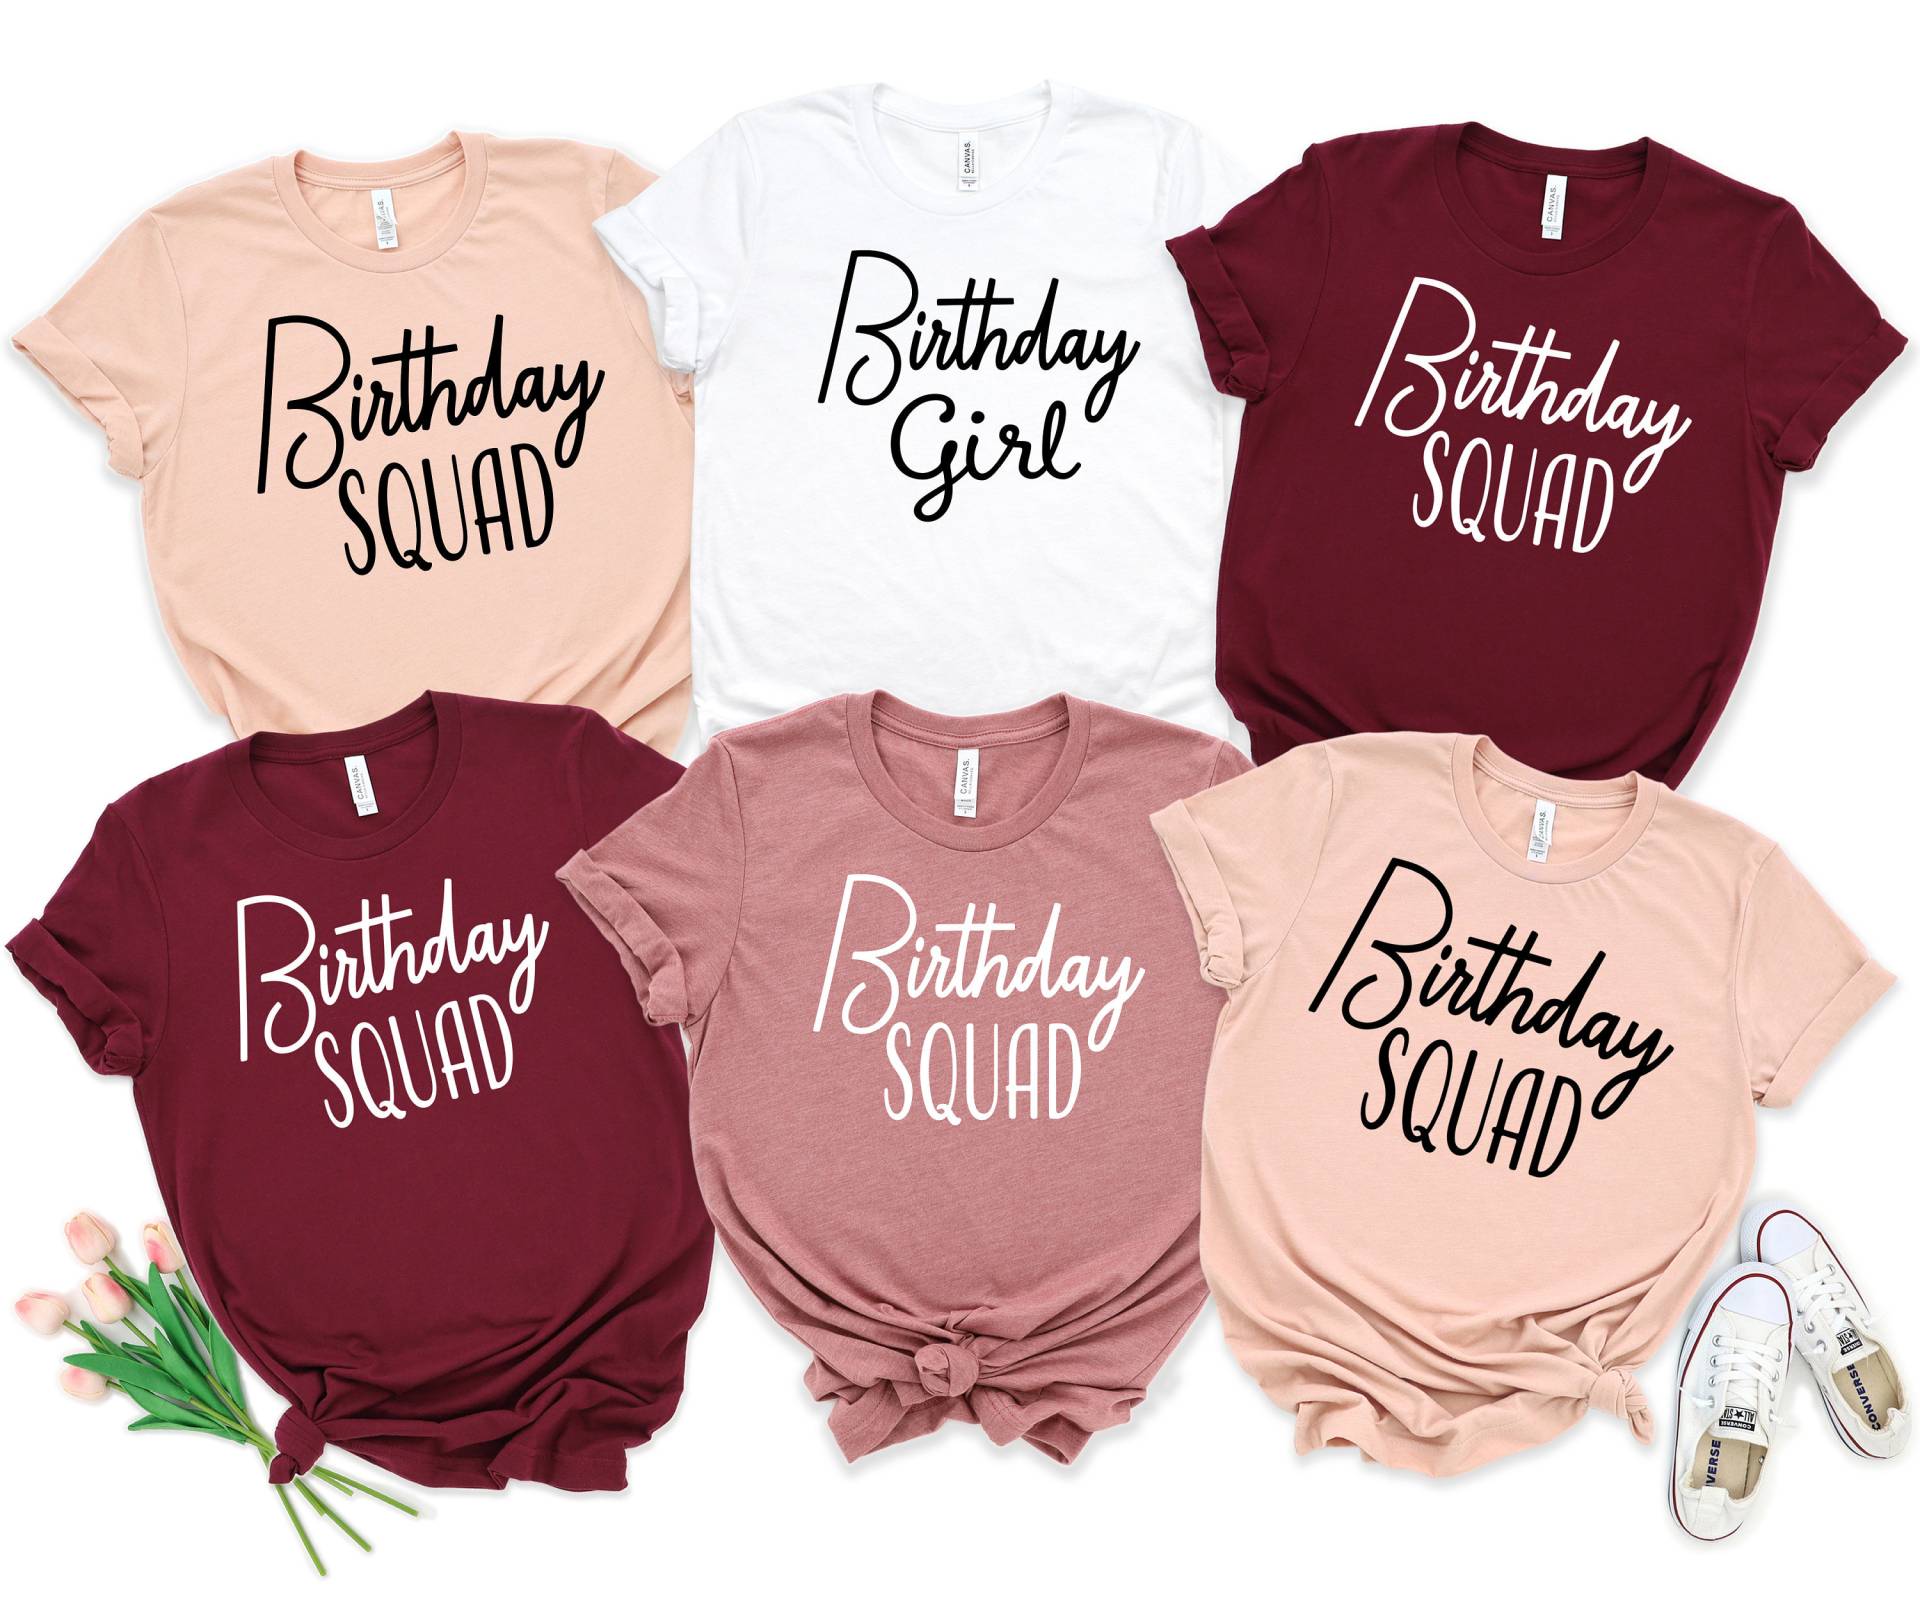 Geburtstag Gruppe Shirts, Crew Squad Ich Bin Das Mädchen, Birthday Party Shirt, Shirt von JoysunDesigns